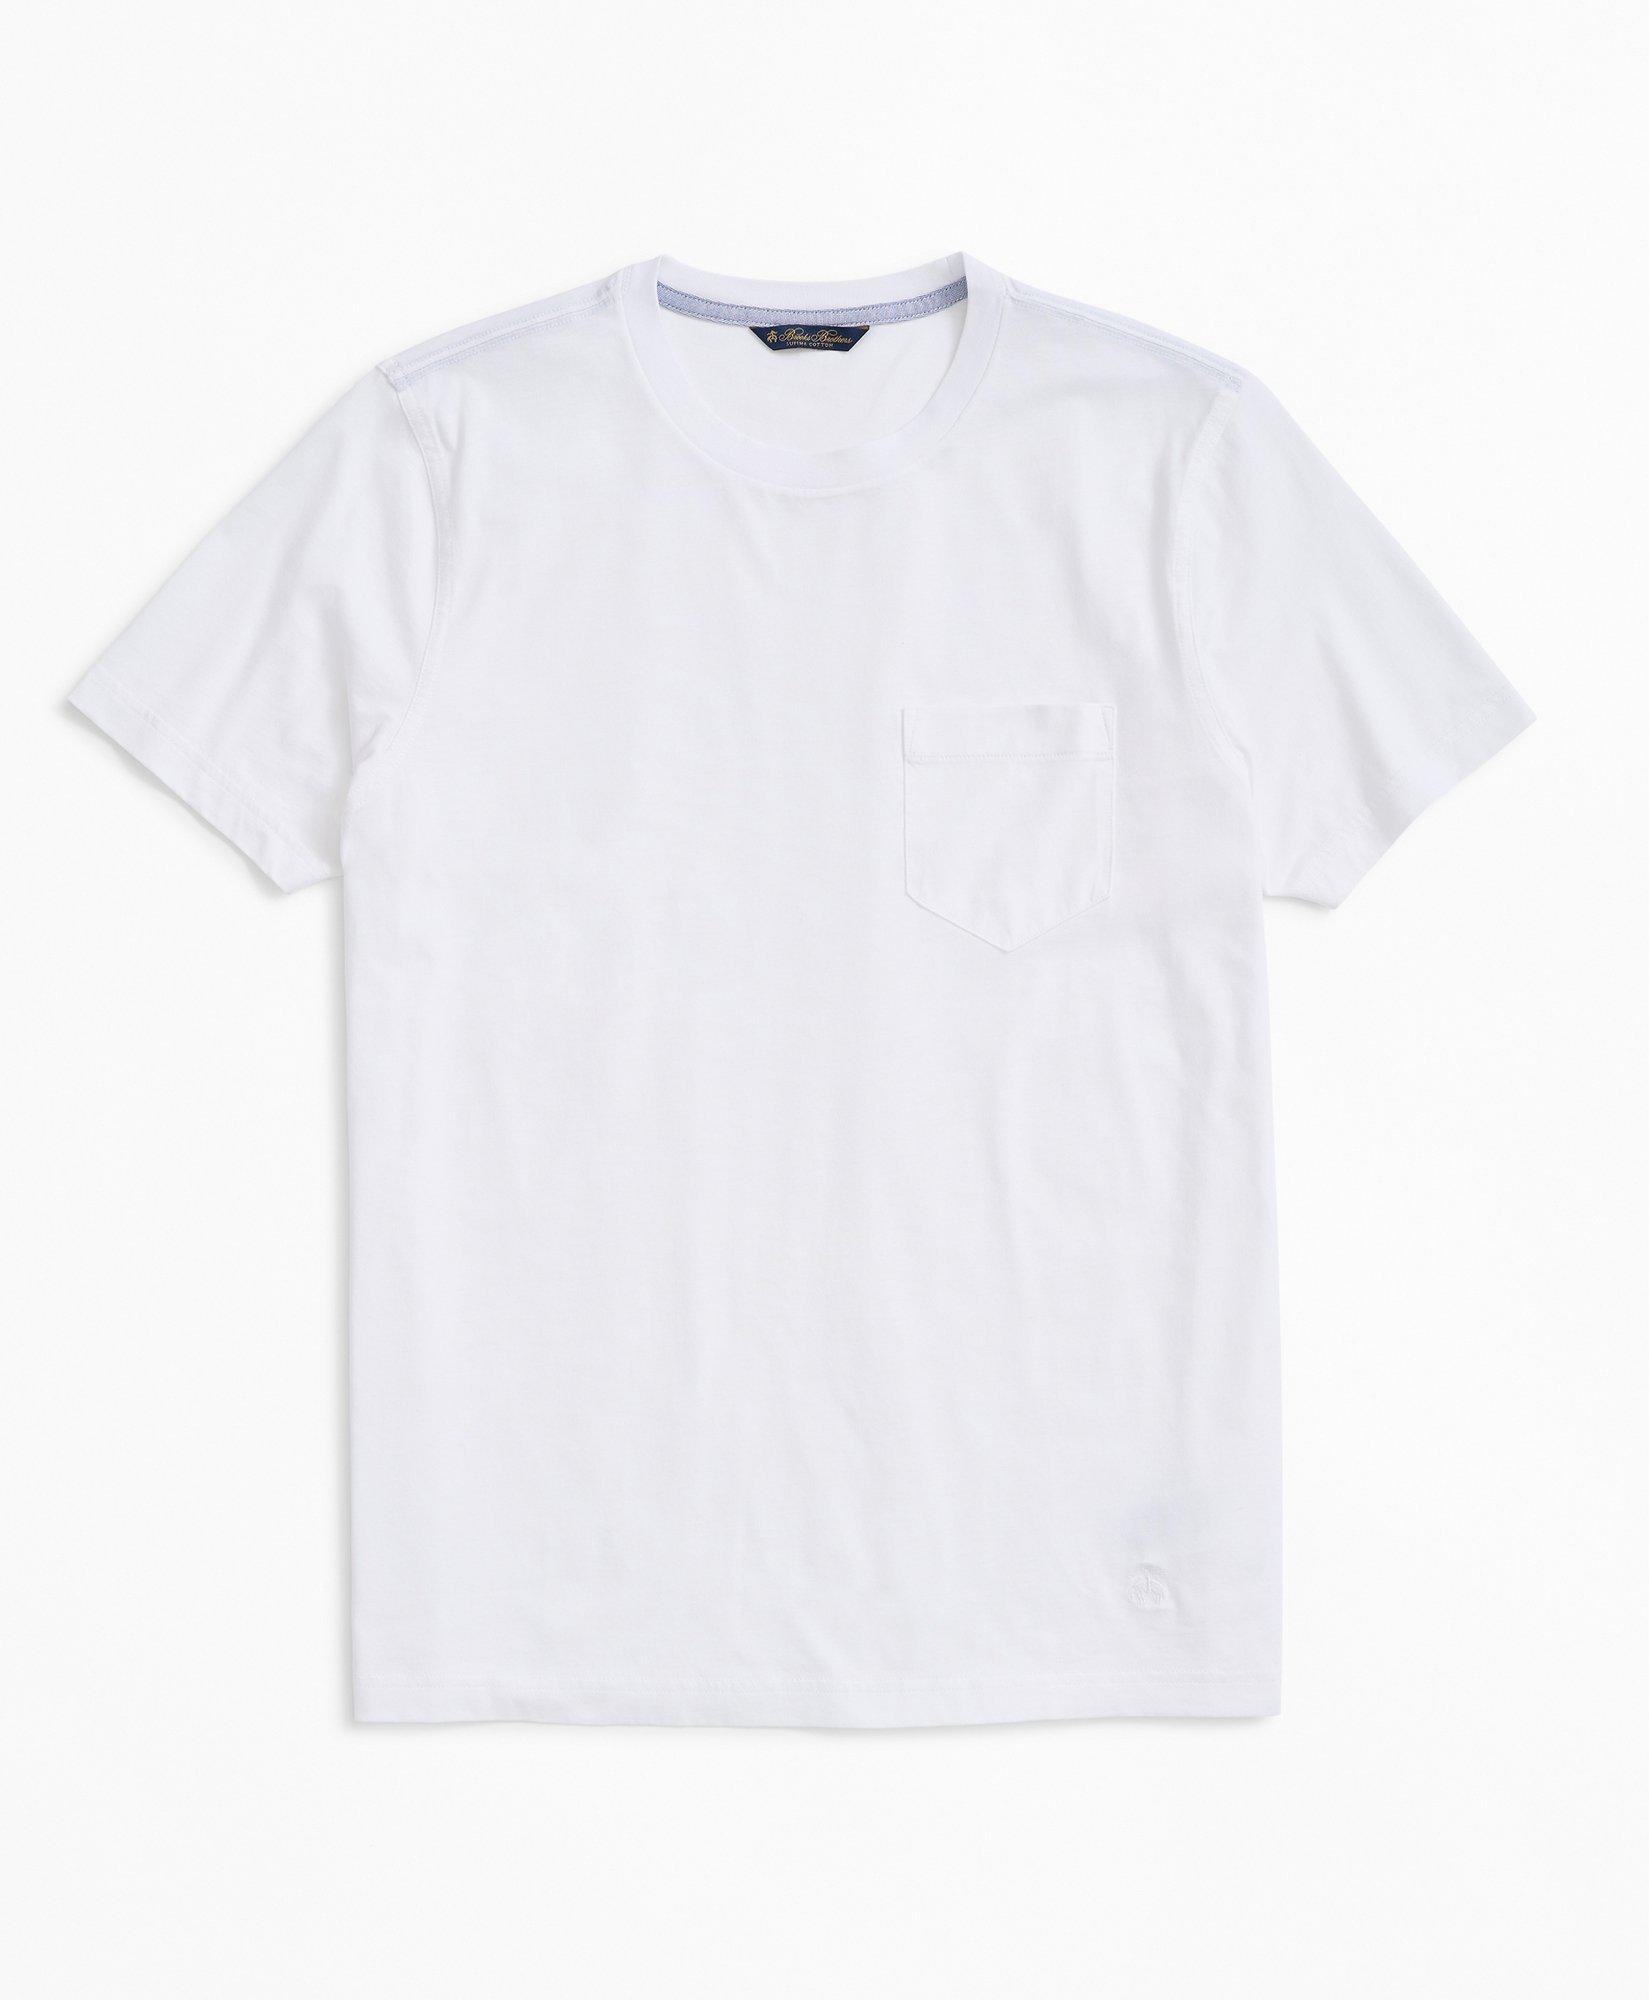 Brooks Brothers Washed Supima Cotton Pocket Crewneck T-shirt | White | Size Xl